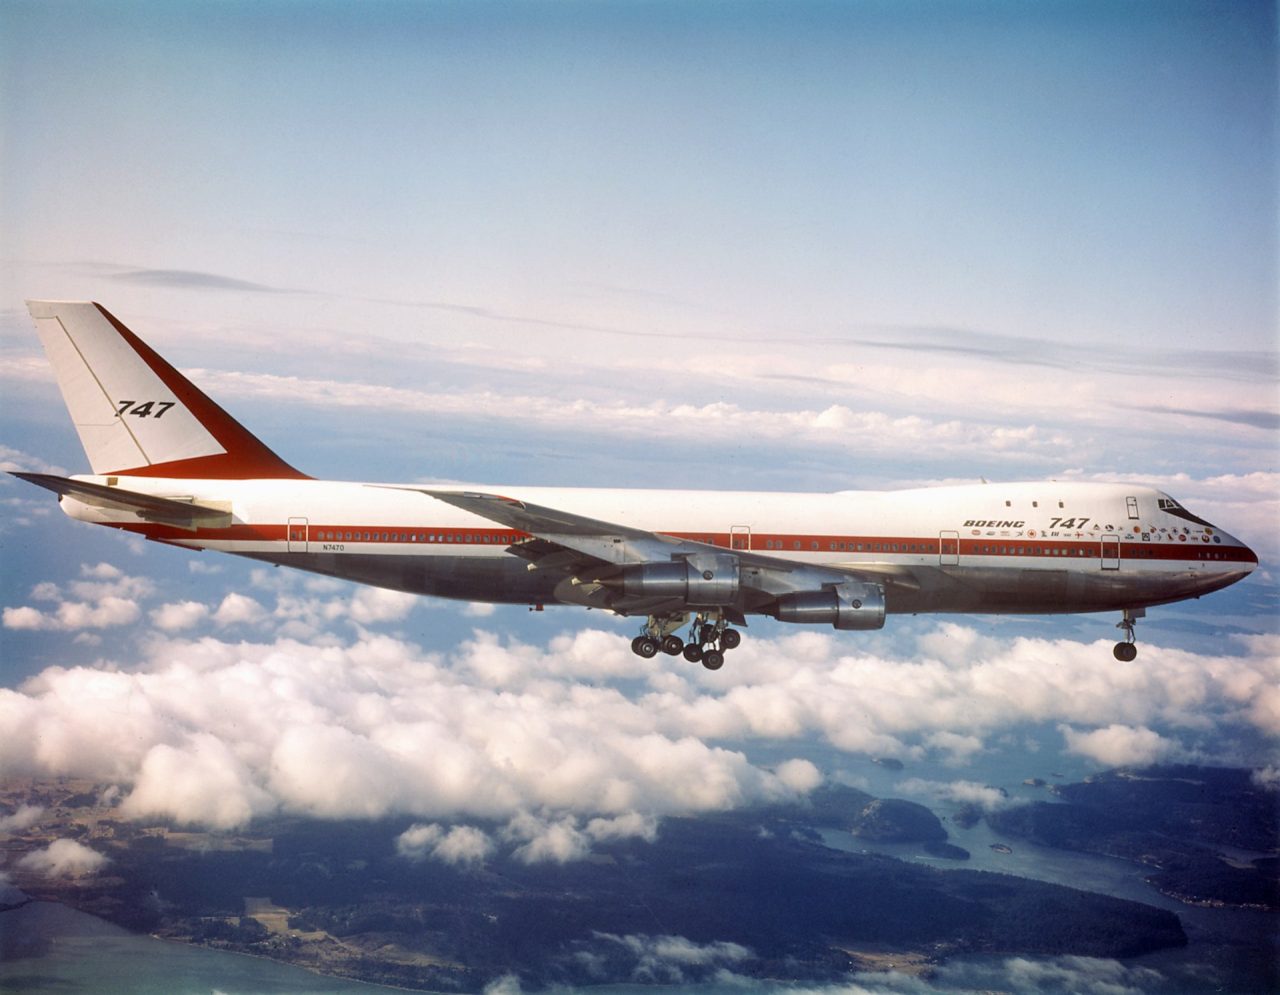 747-100 in Flight with Landing Gear Down